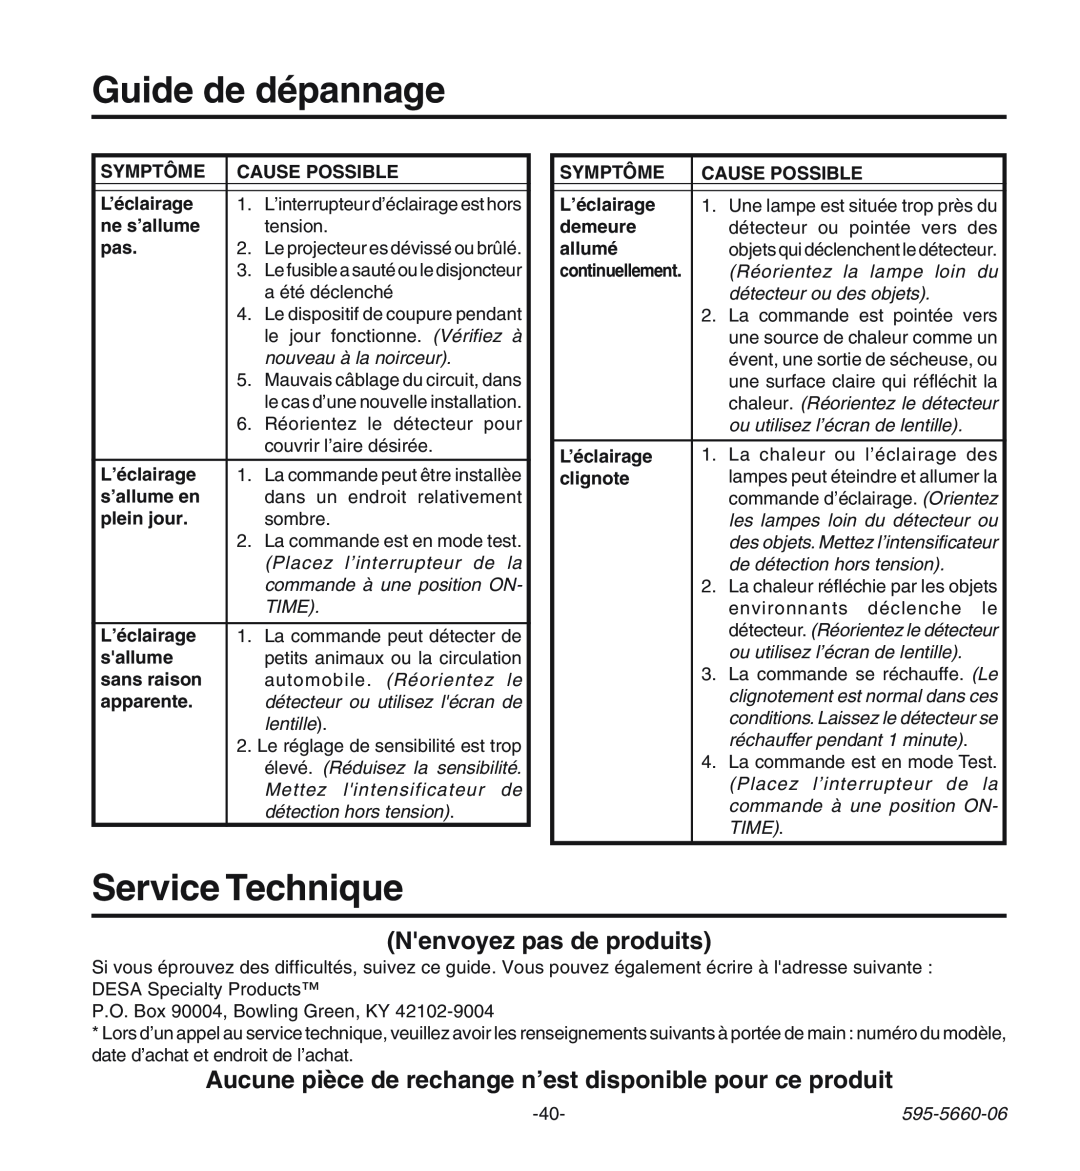 Desa HD-9140 manual Guide de dépannage, Service Technique, Nenvoyez pas de produits 